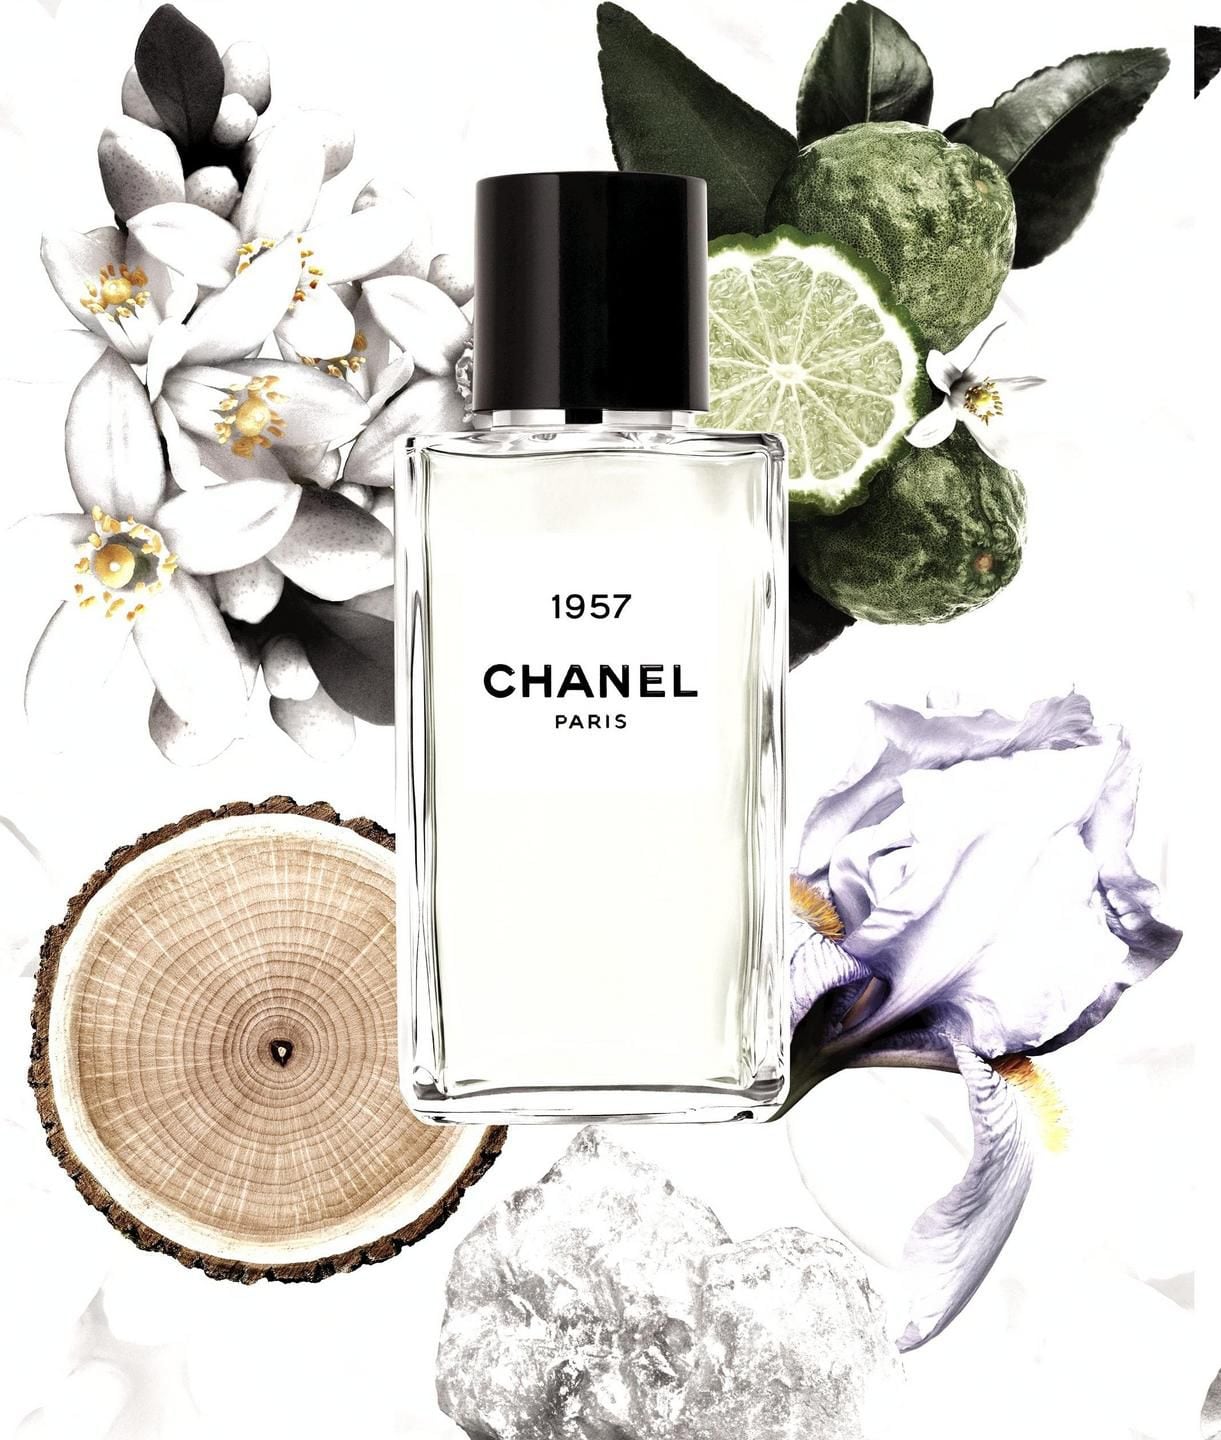 Chanel 1957 Perfume Review! Les Exclusifs Chanel Eau de Parfum Fragrance 